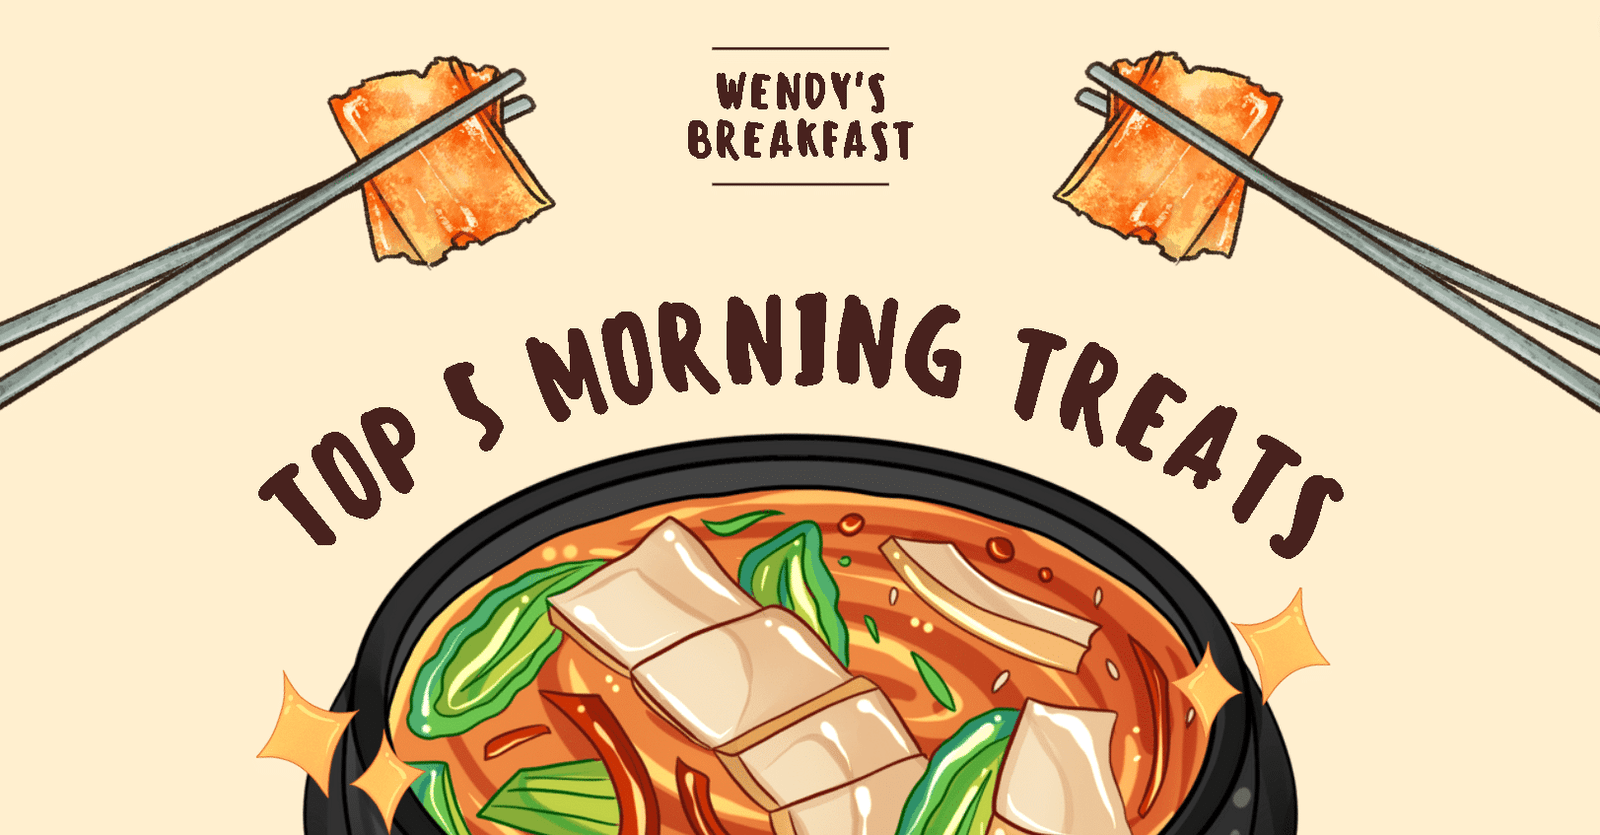 Wendy's Breakfast